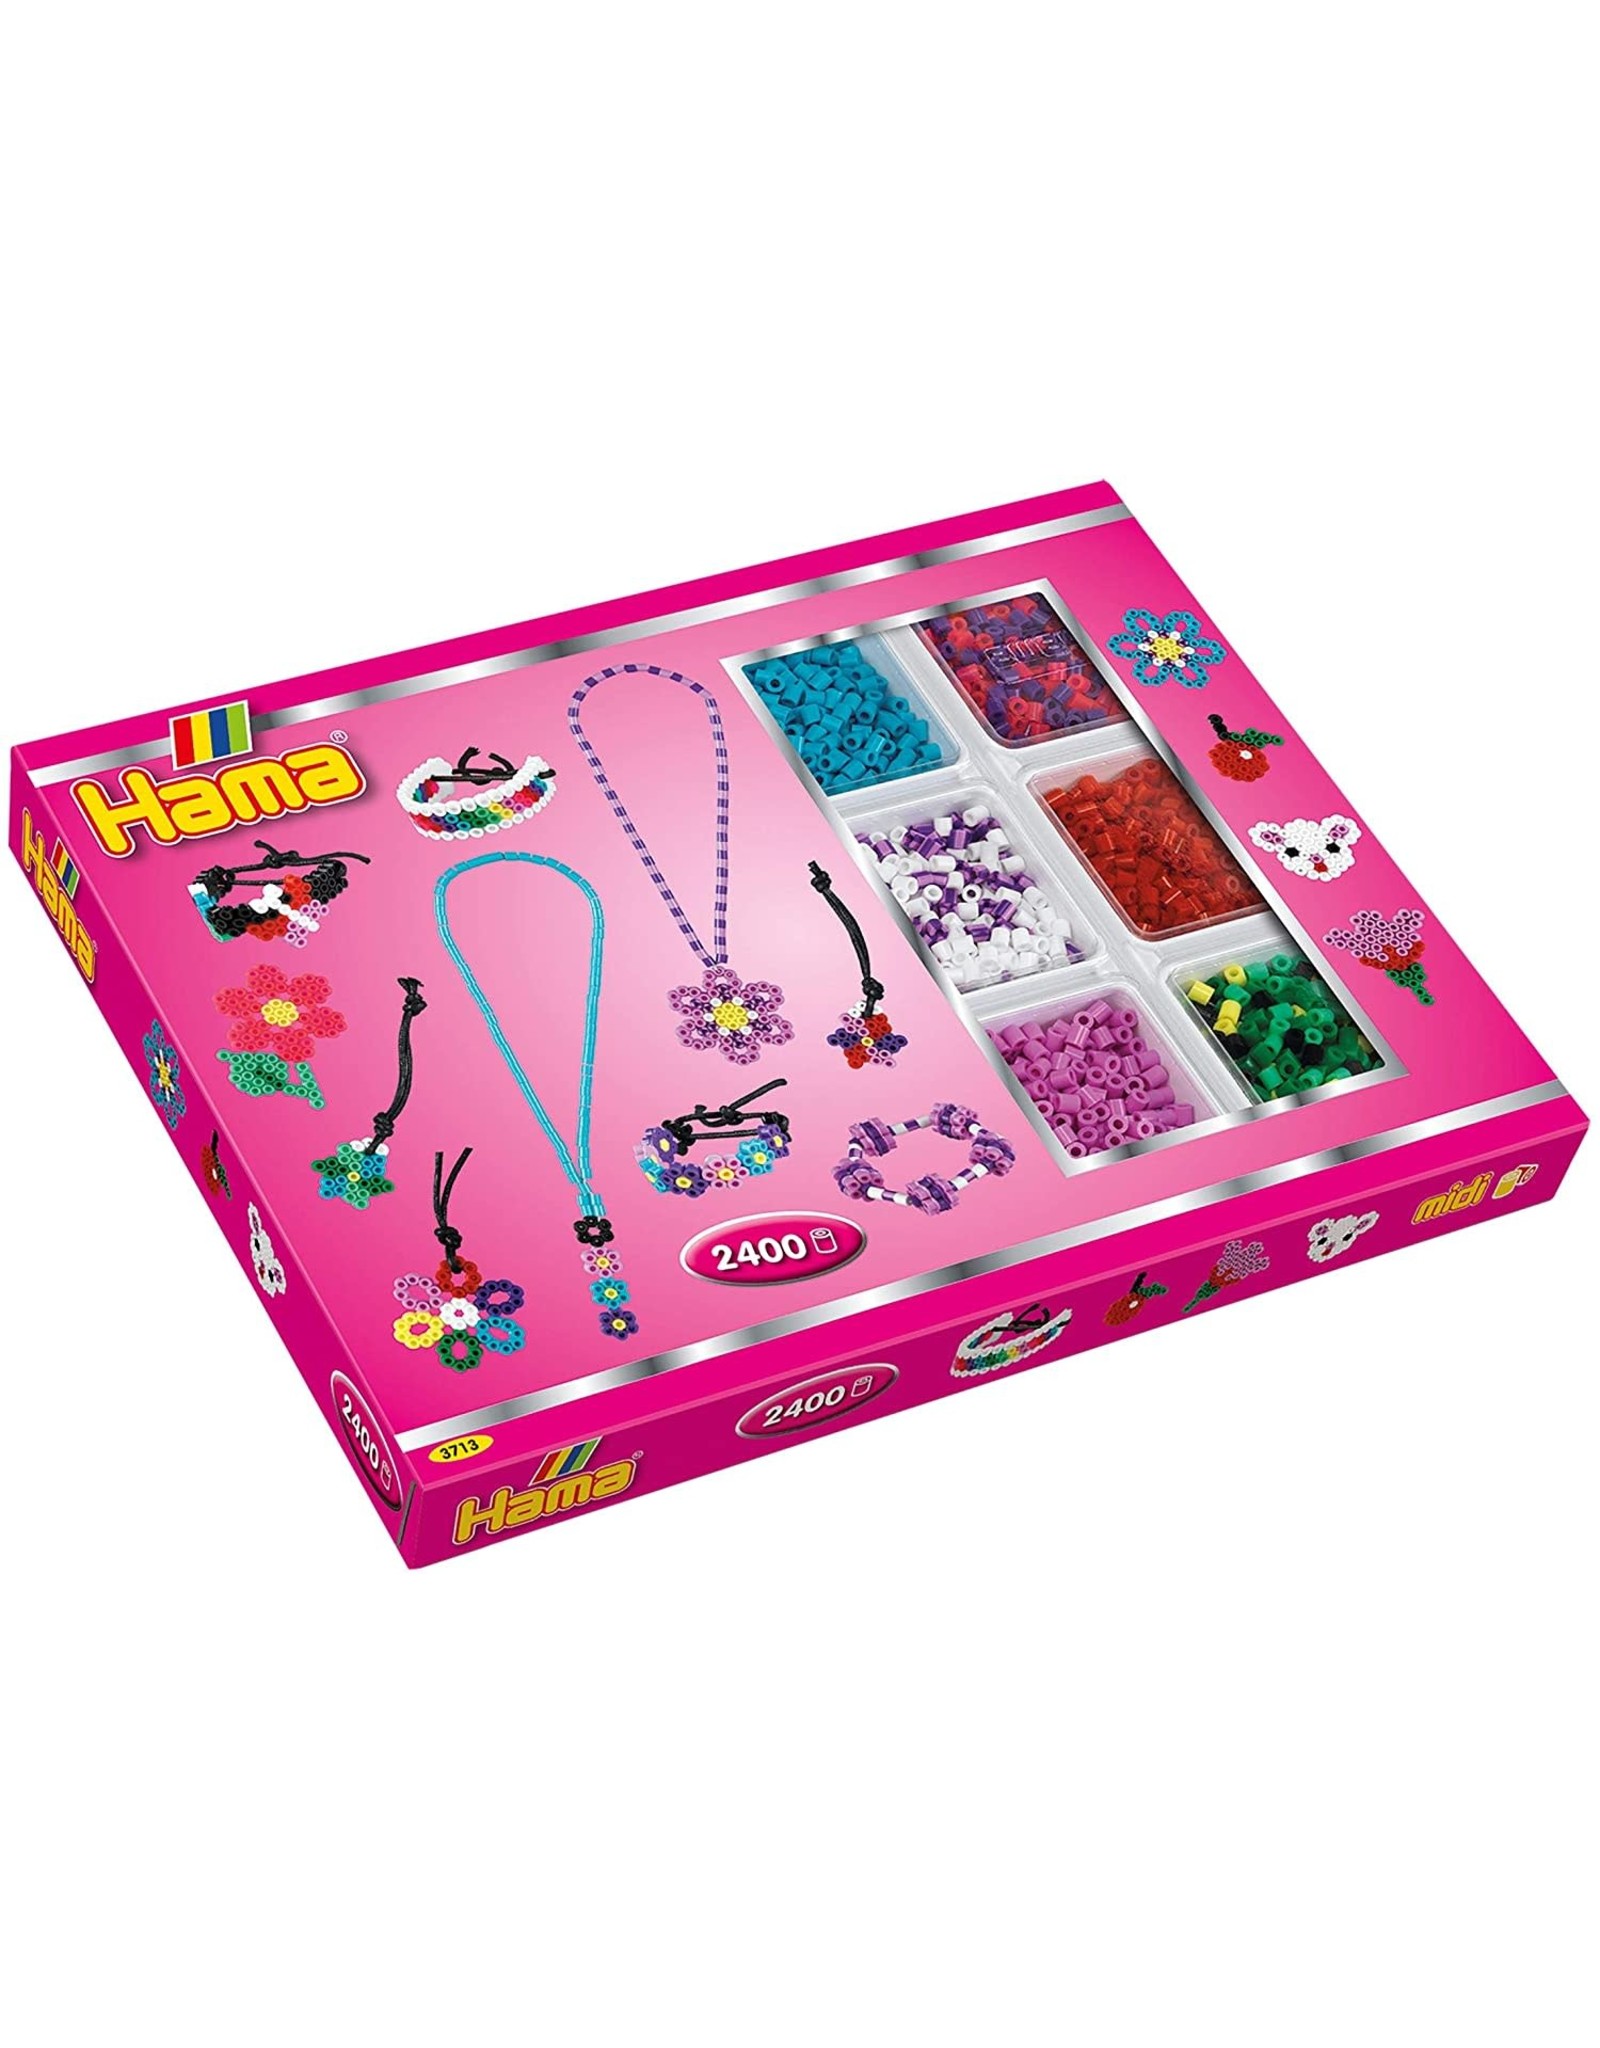 Hama Hama Gift Box Pink